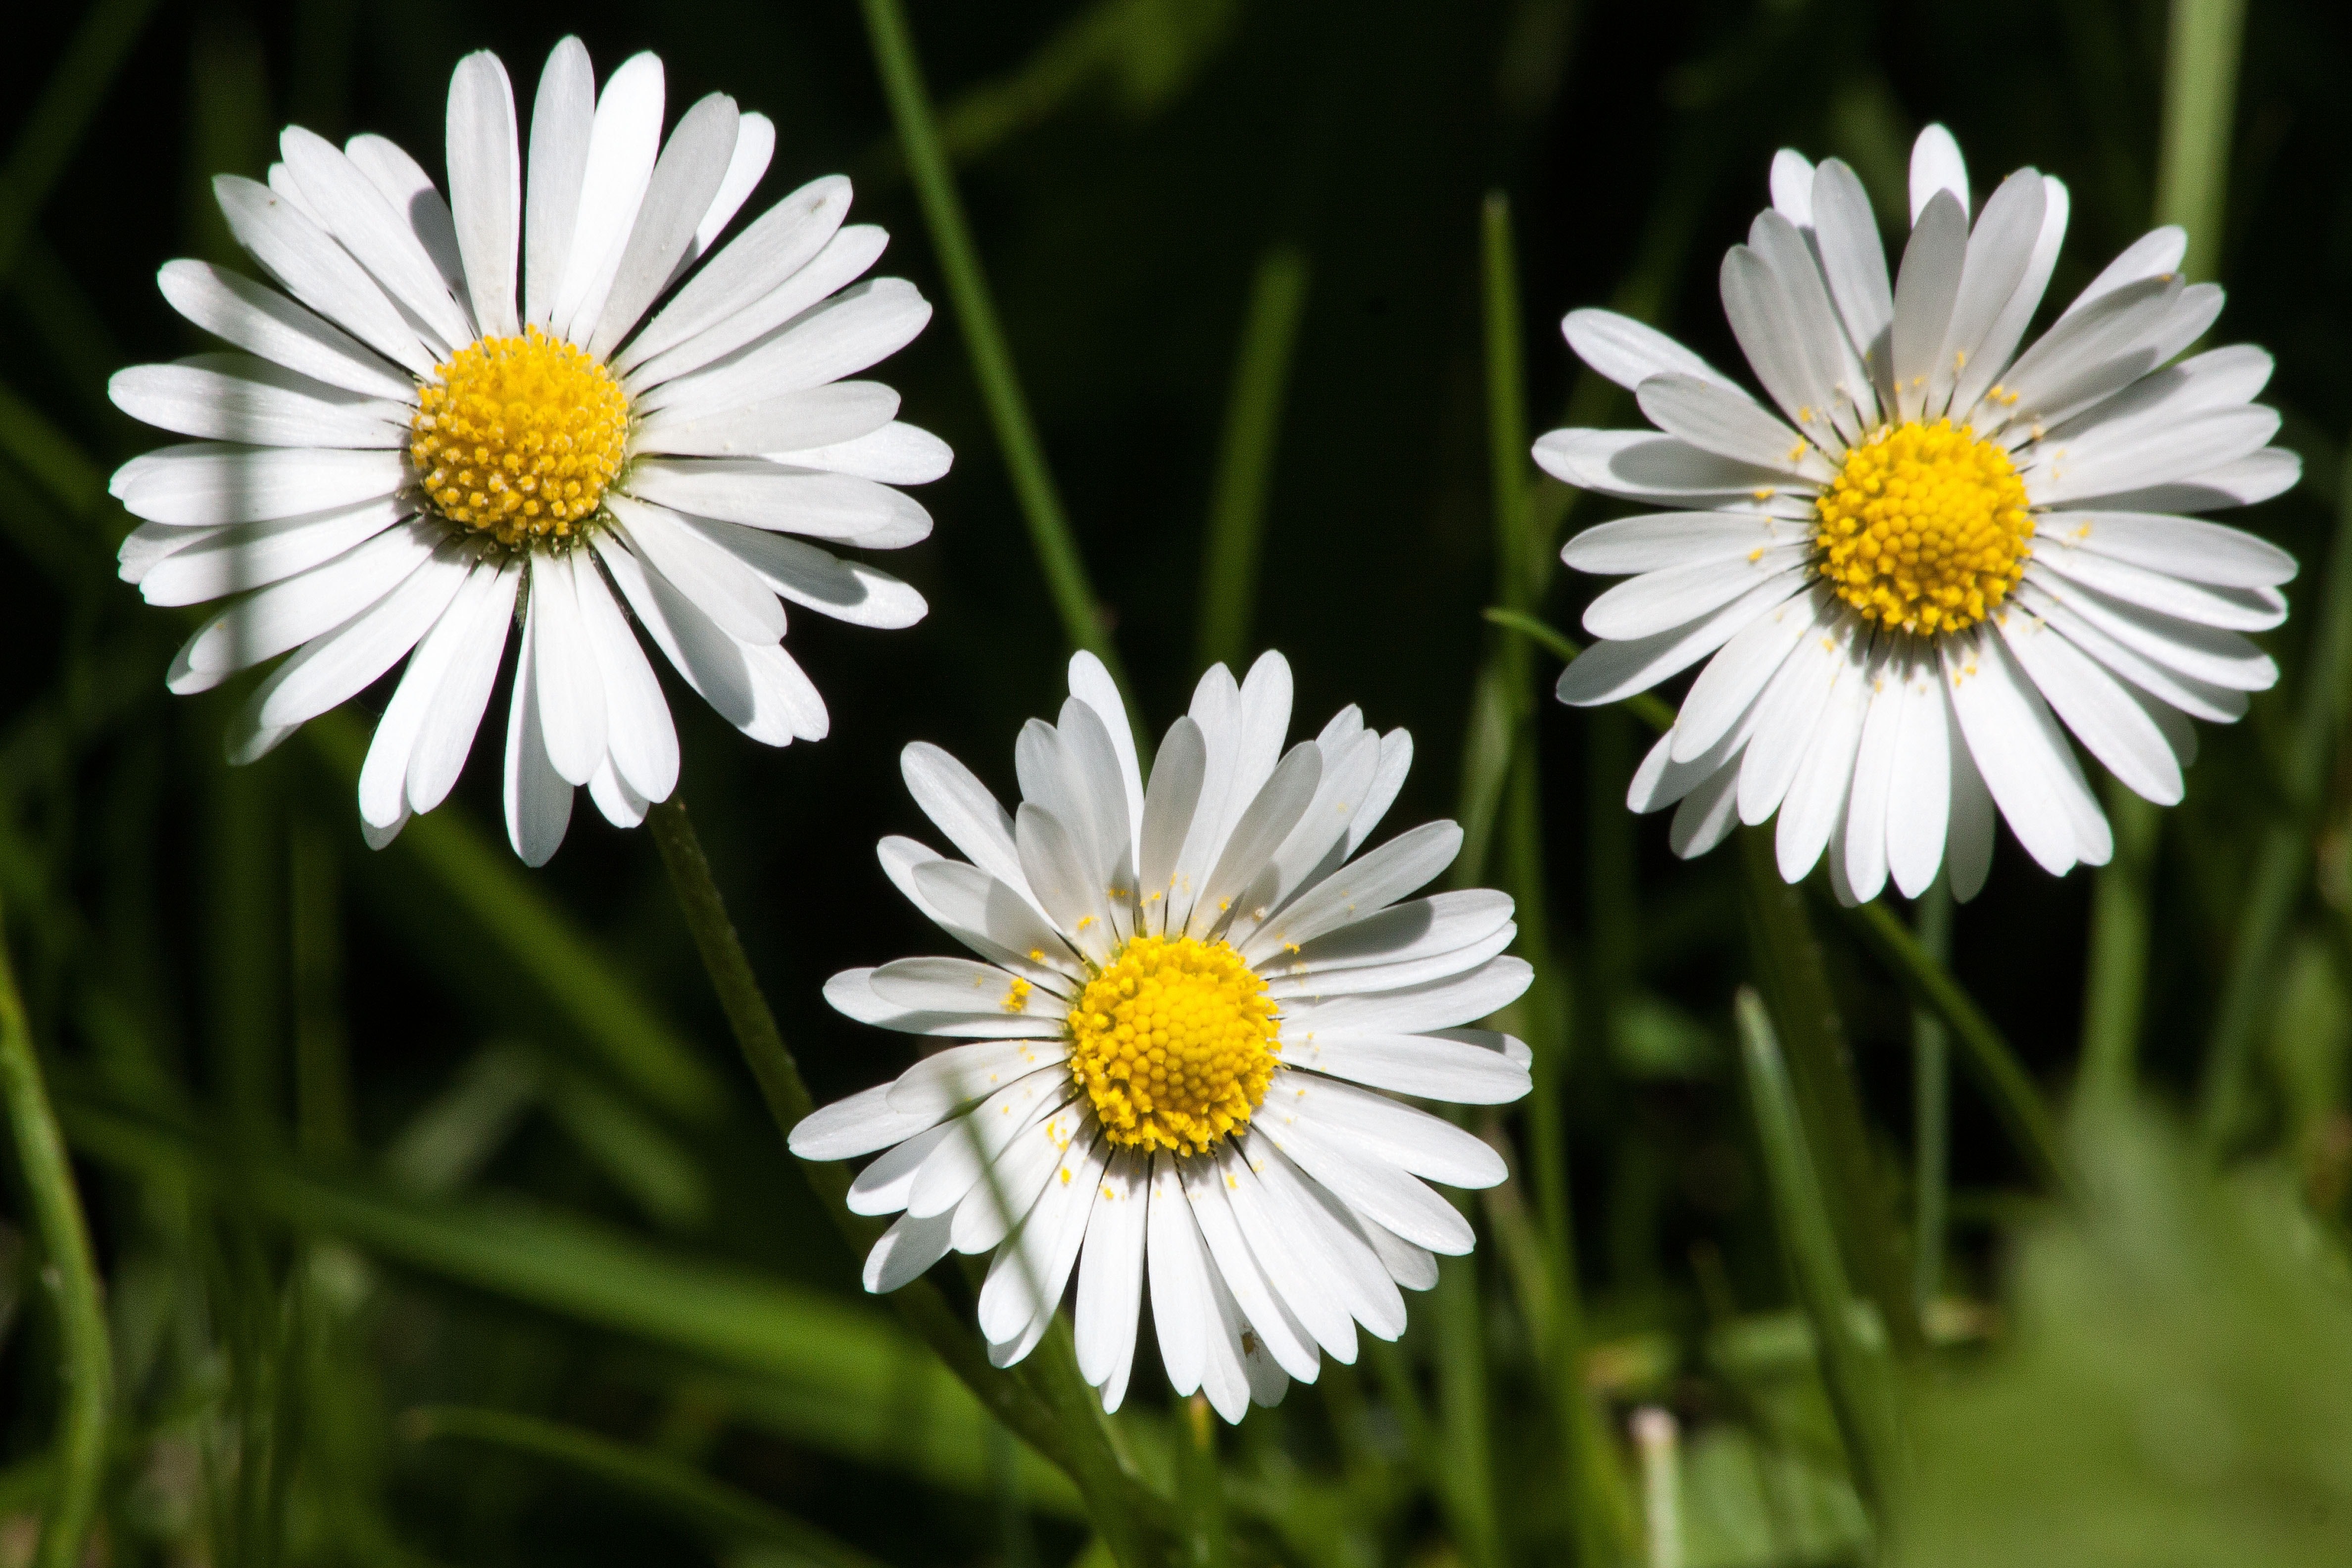 3 white daisies